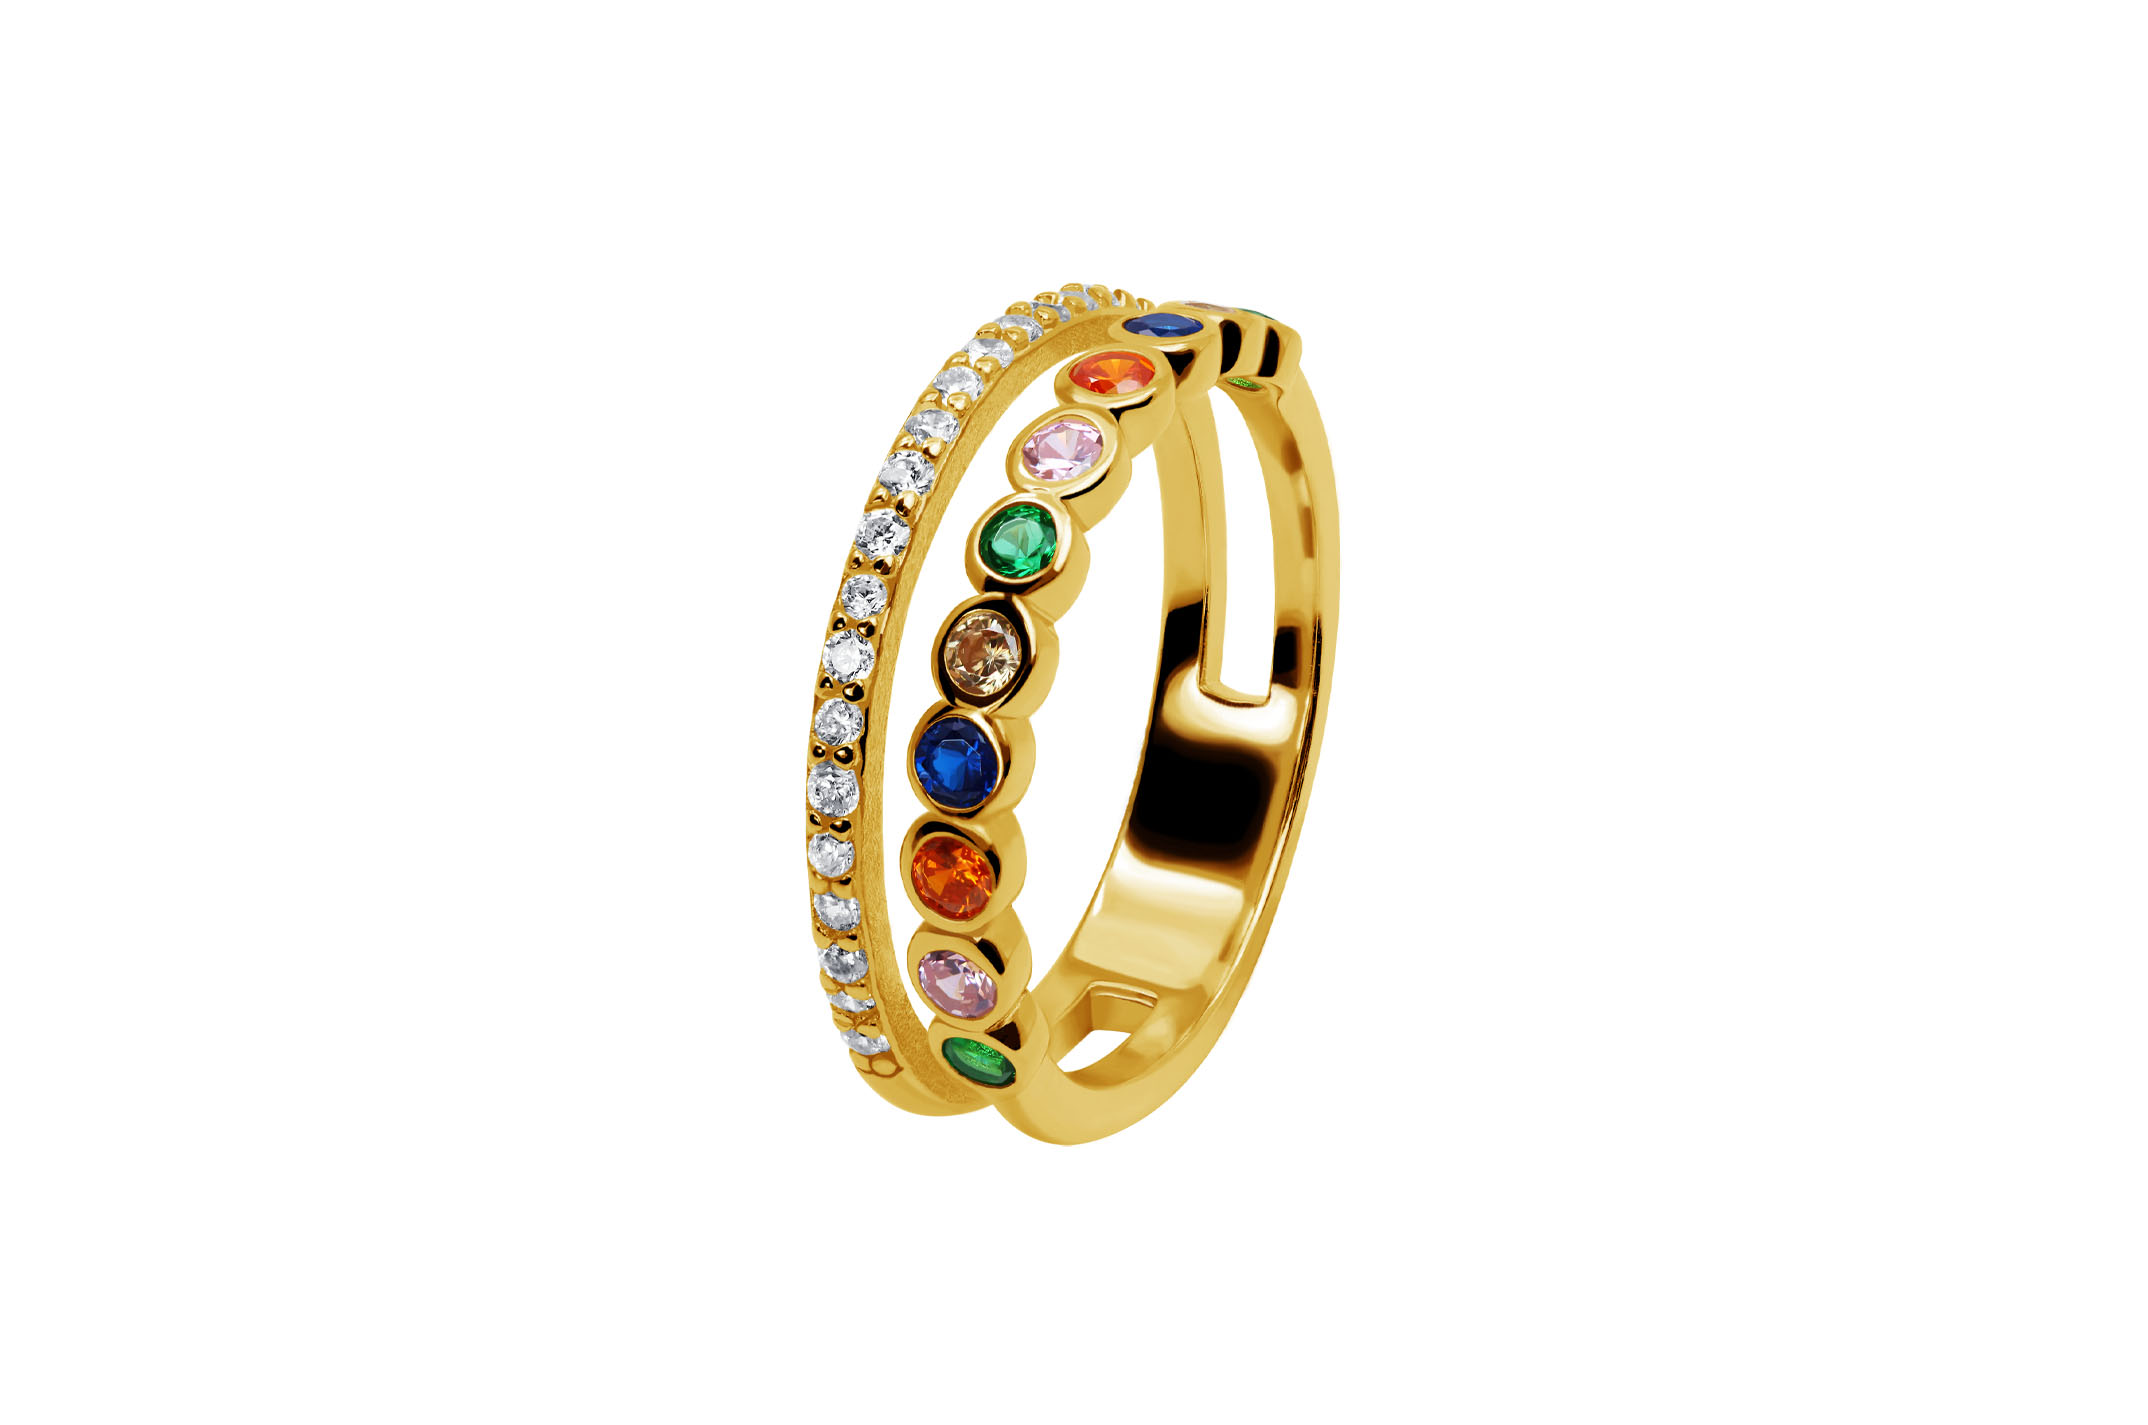 Joia: anel;Material: prata 925;Peso: 2.7 gr;Pedras: zircónias;Cor: amarelo;Género: mulher